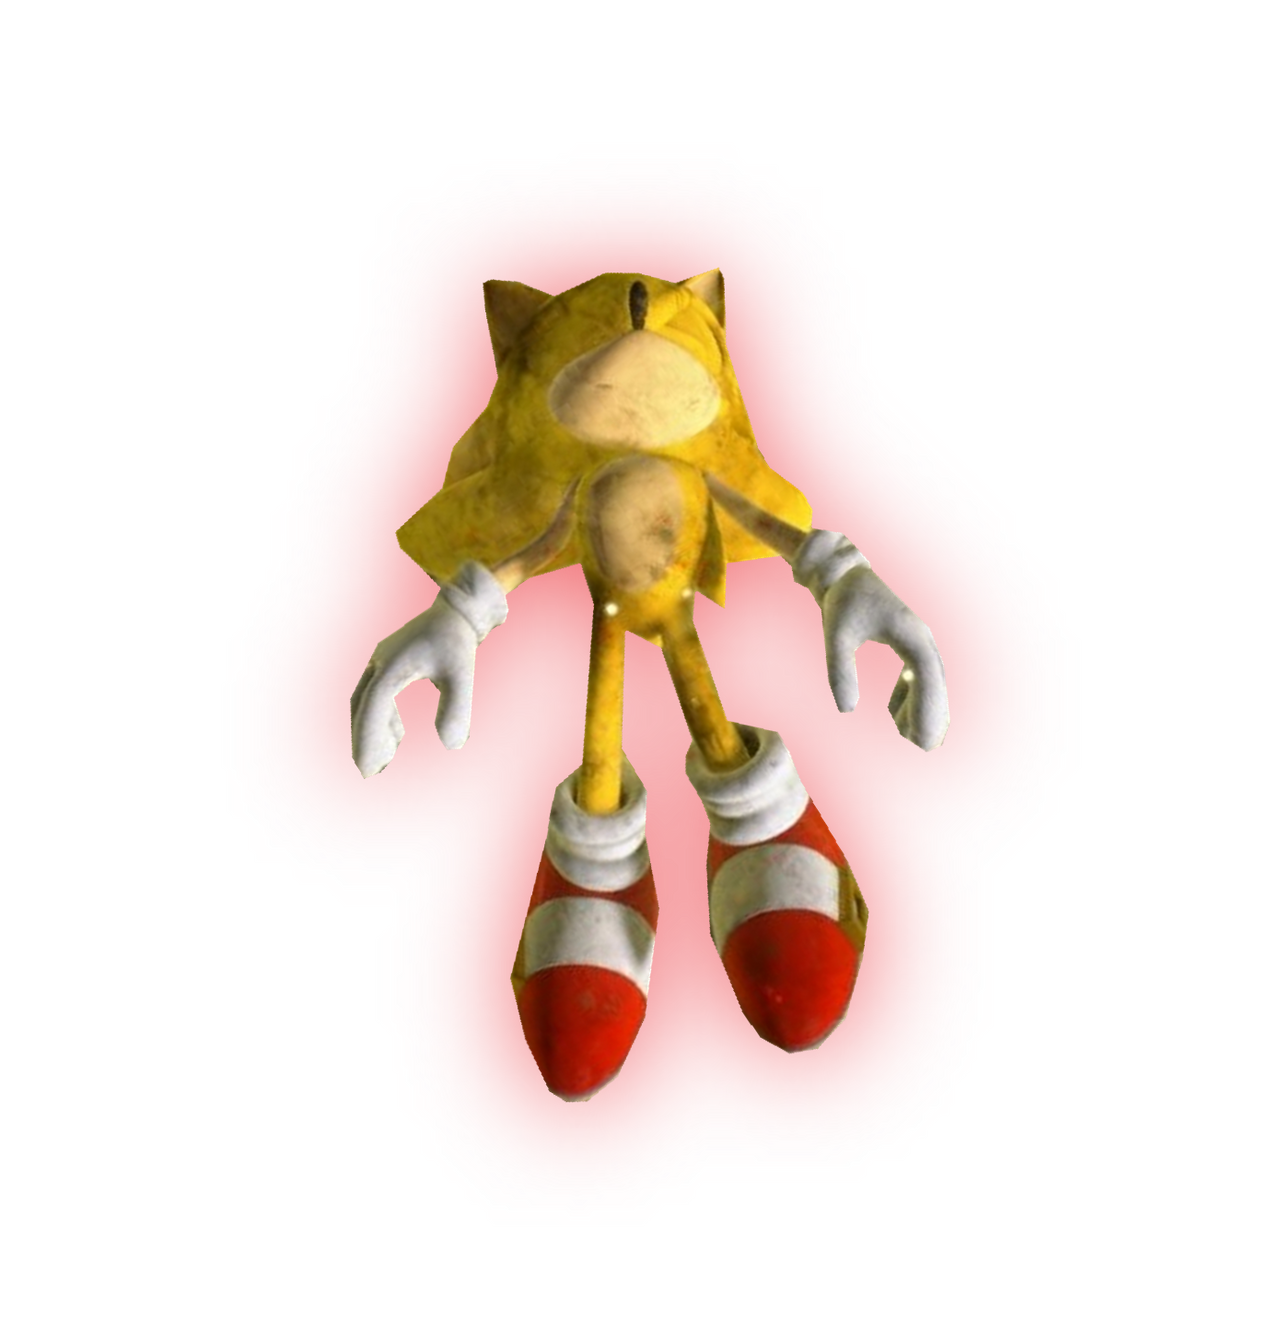 Sonic 2 super deformed download